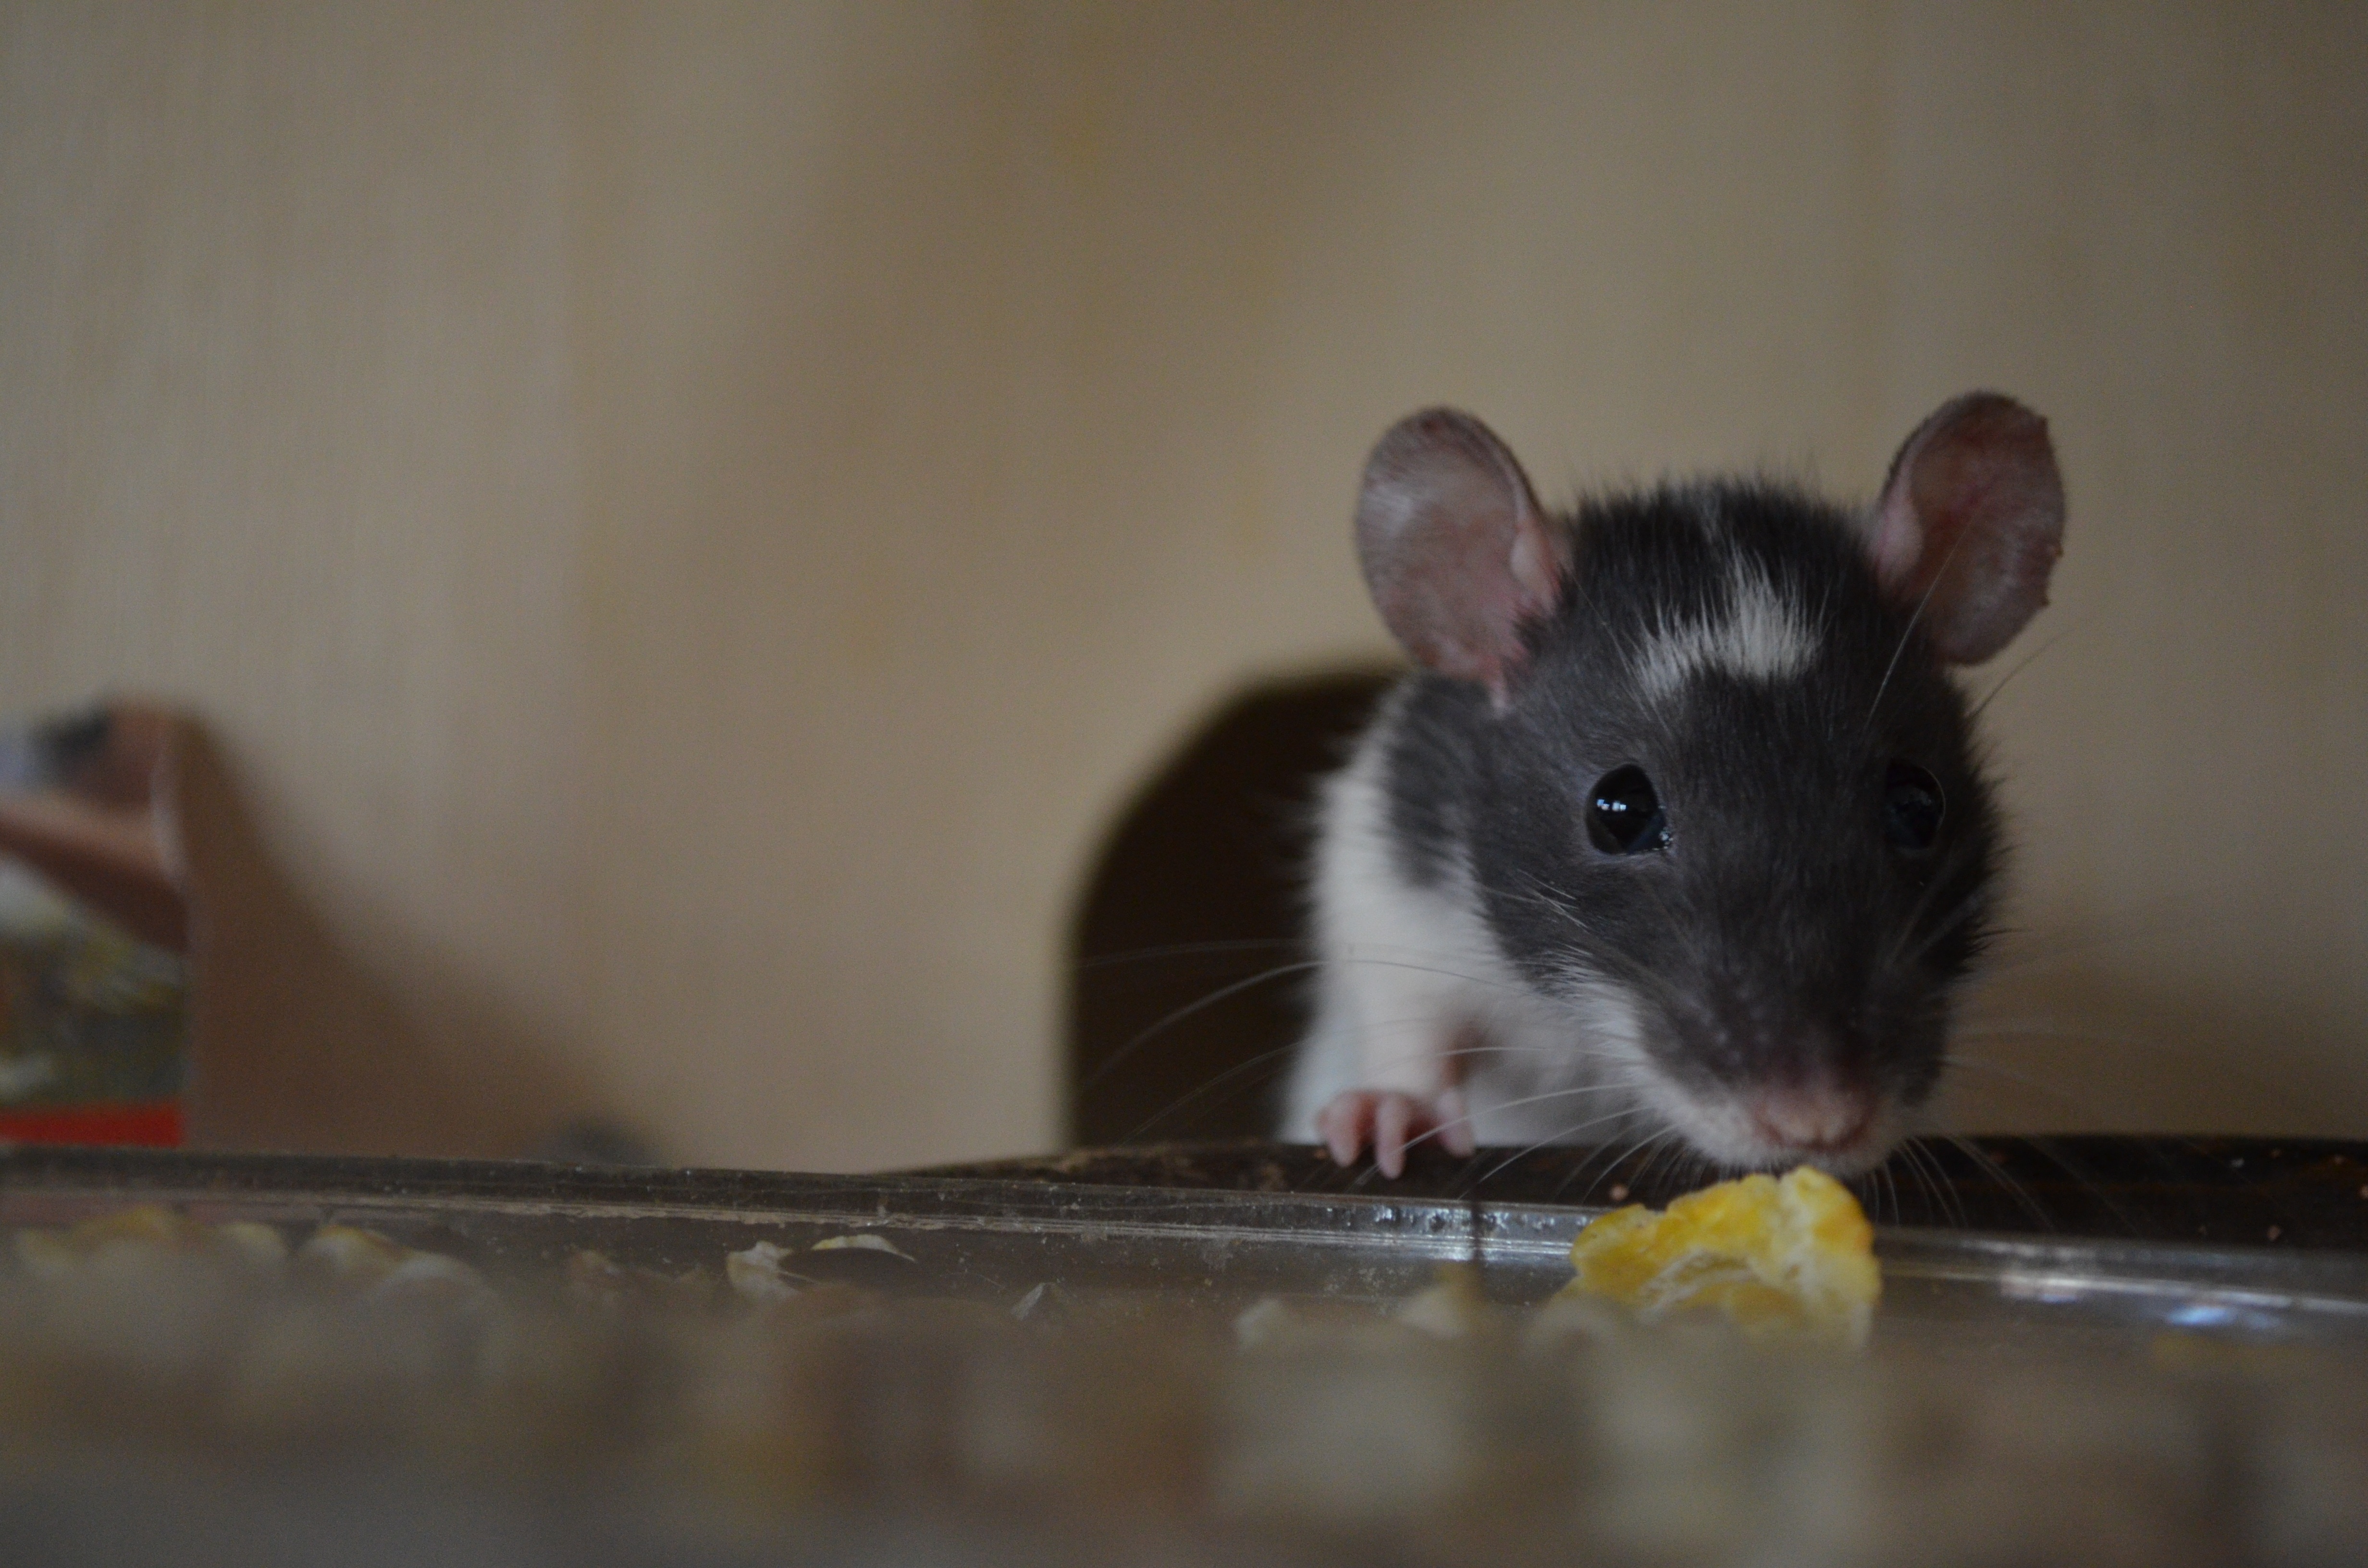 A rat eating a food scrap